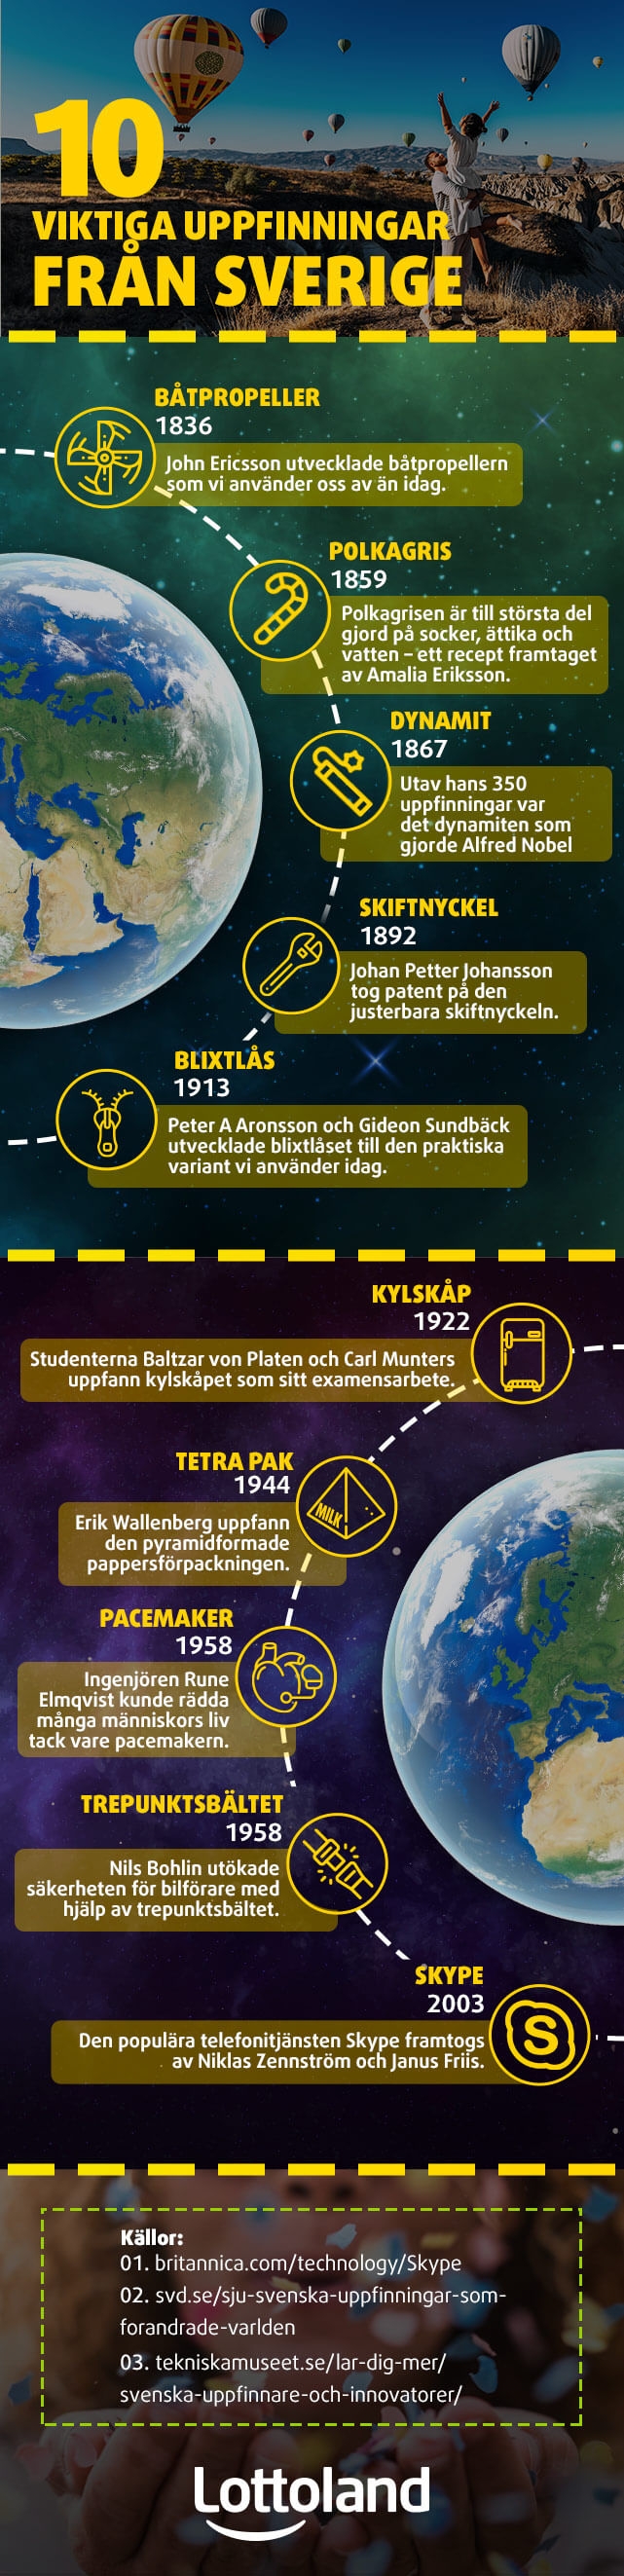 Lista på tio svenska uppfinningar som förändrat världen.